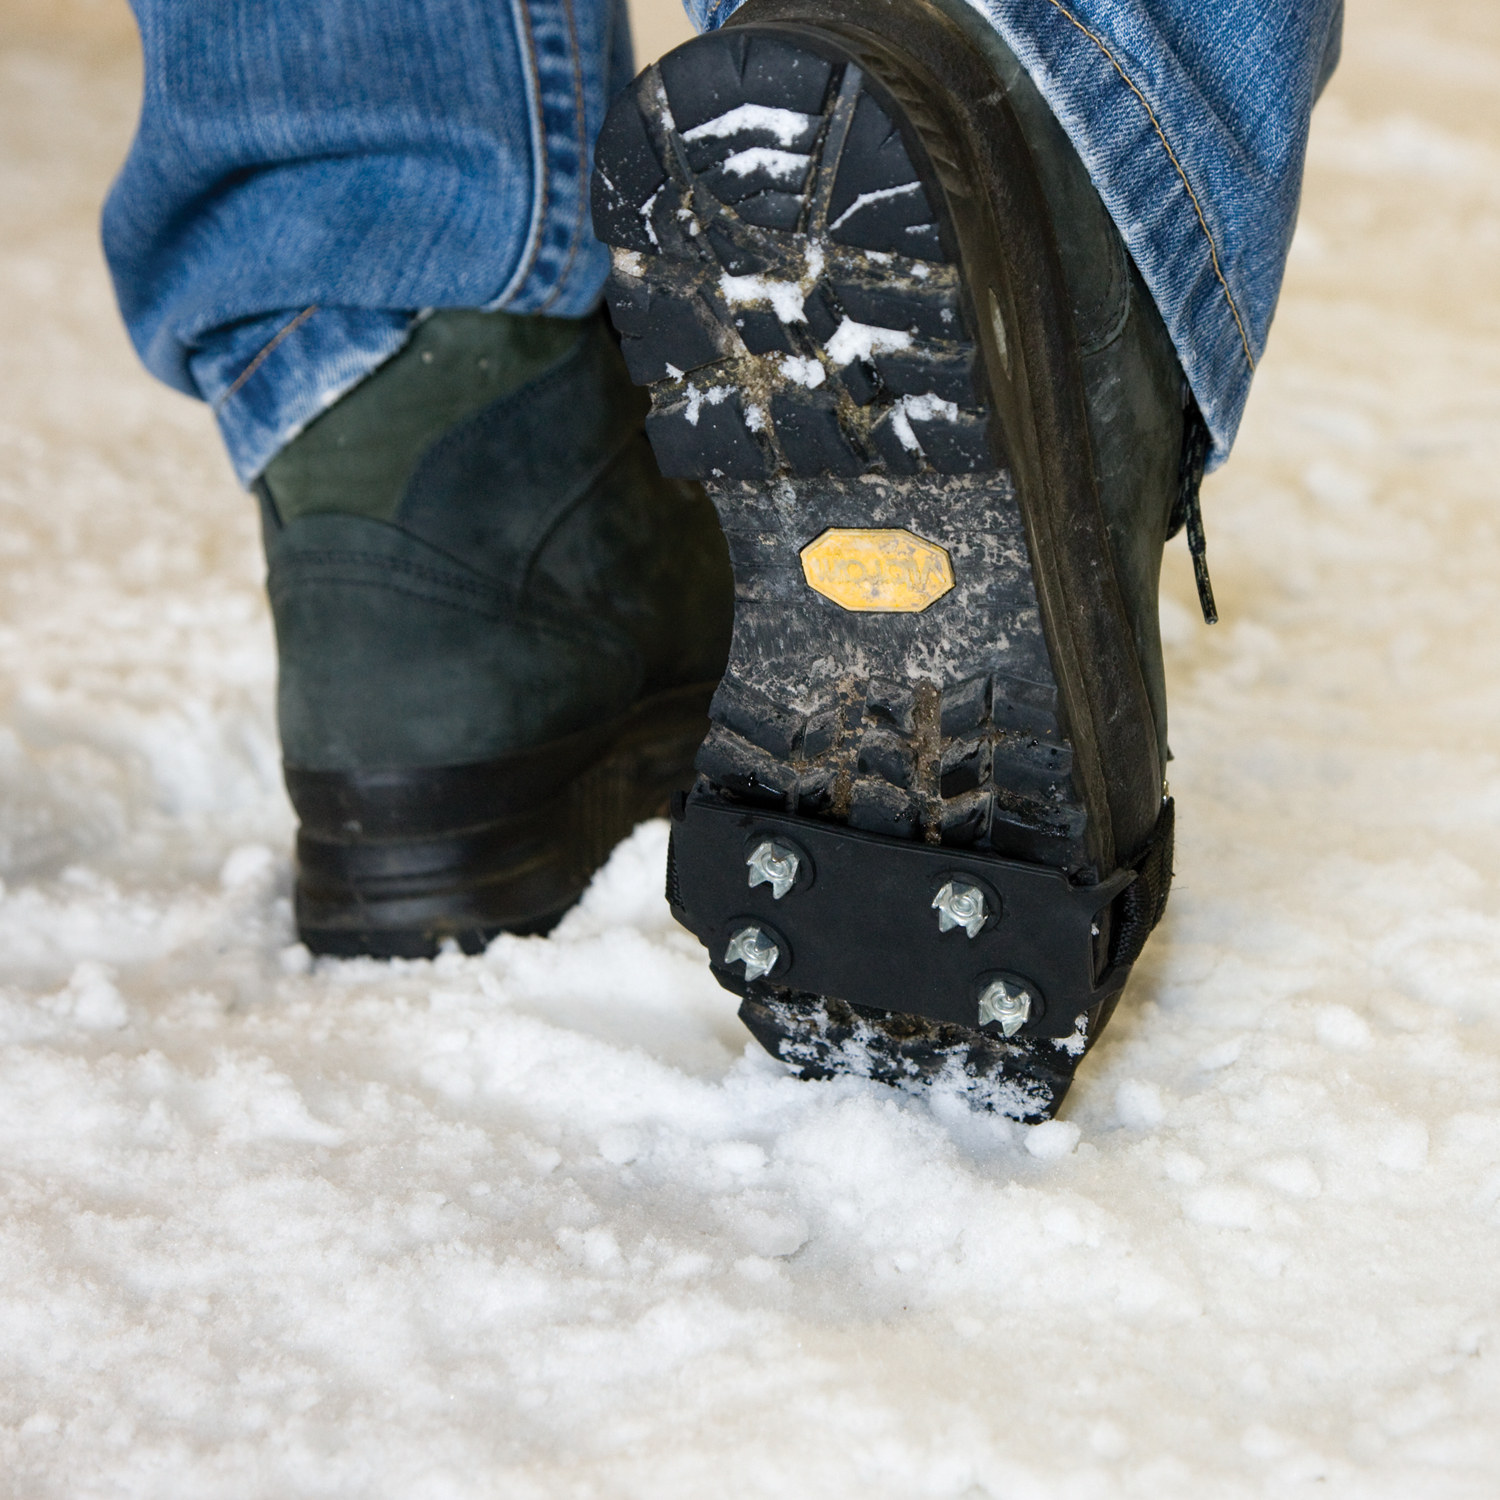 Лайфхаки, что можно сделать, чтобы зимой обувь не скользила по льду